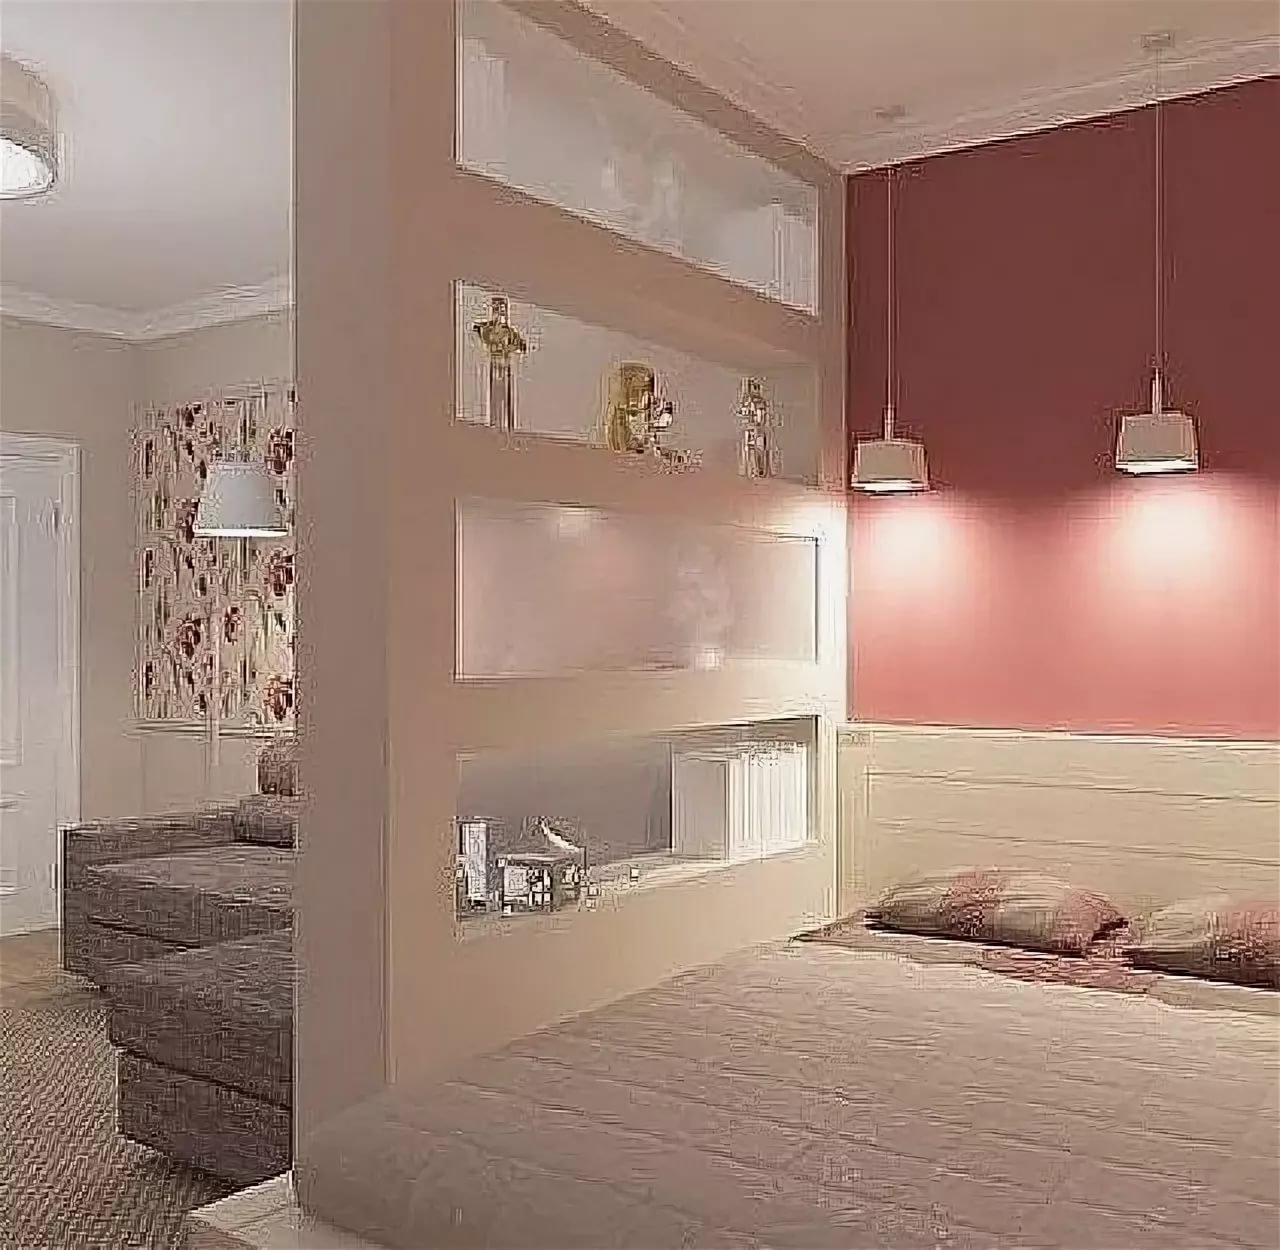 Дизайн спальни с разделением зон